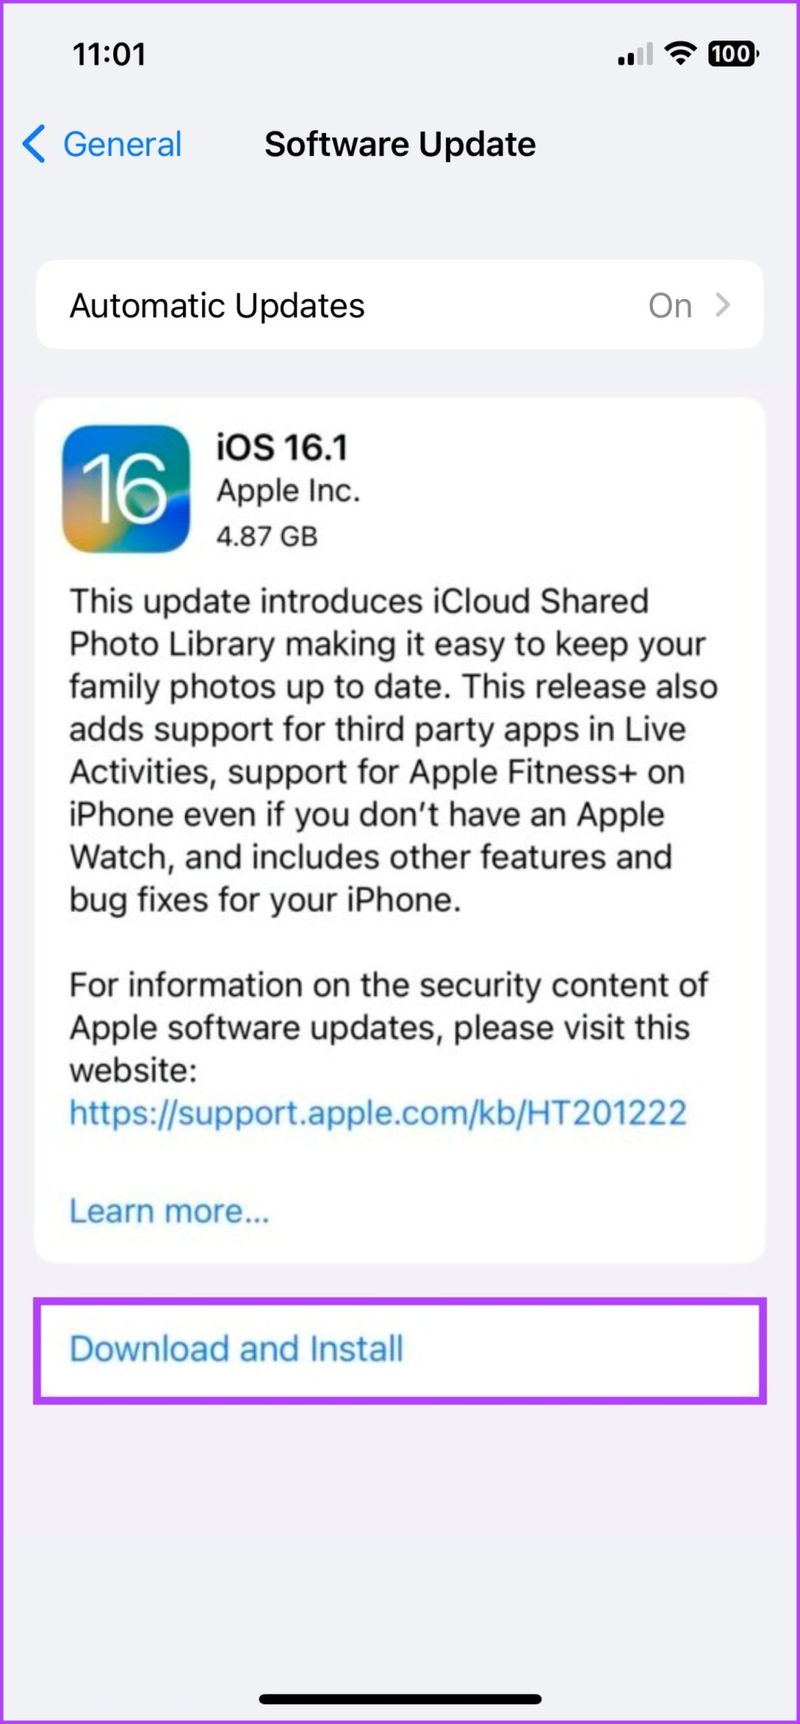 Tippen Sie auf Herunterladen und installieren, um das neueste iOS-Update zu erhalten